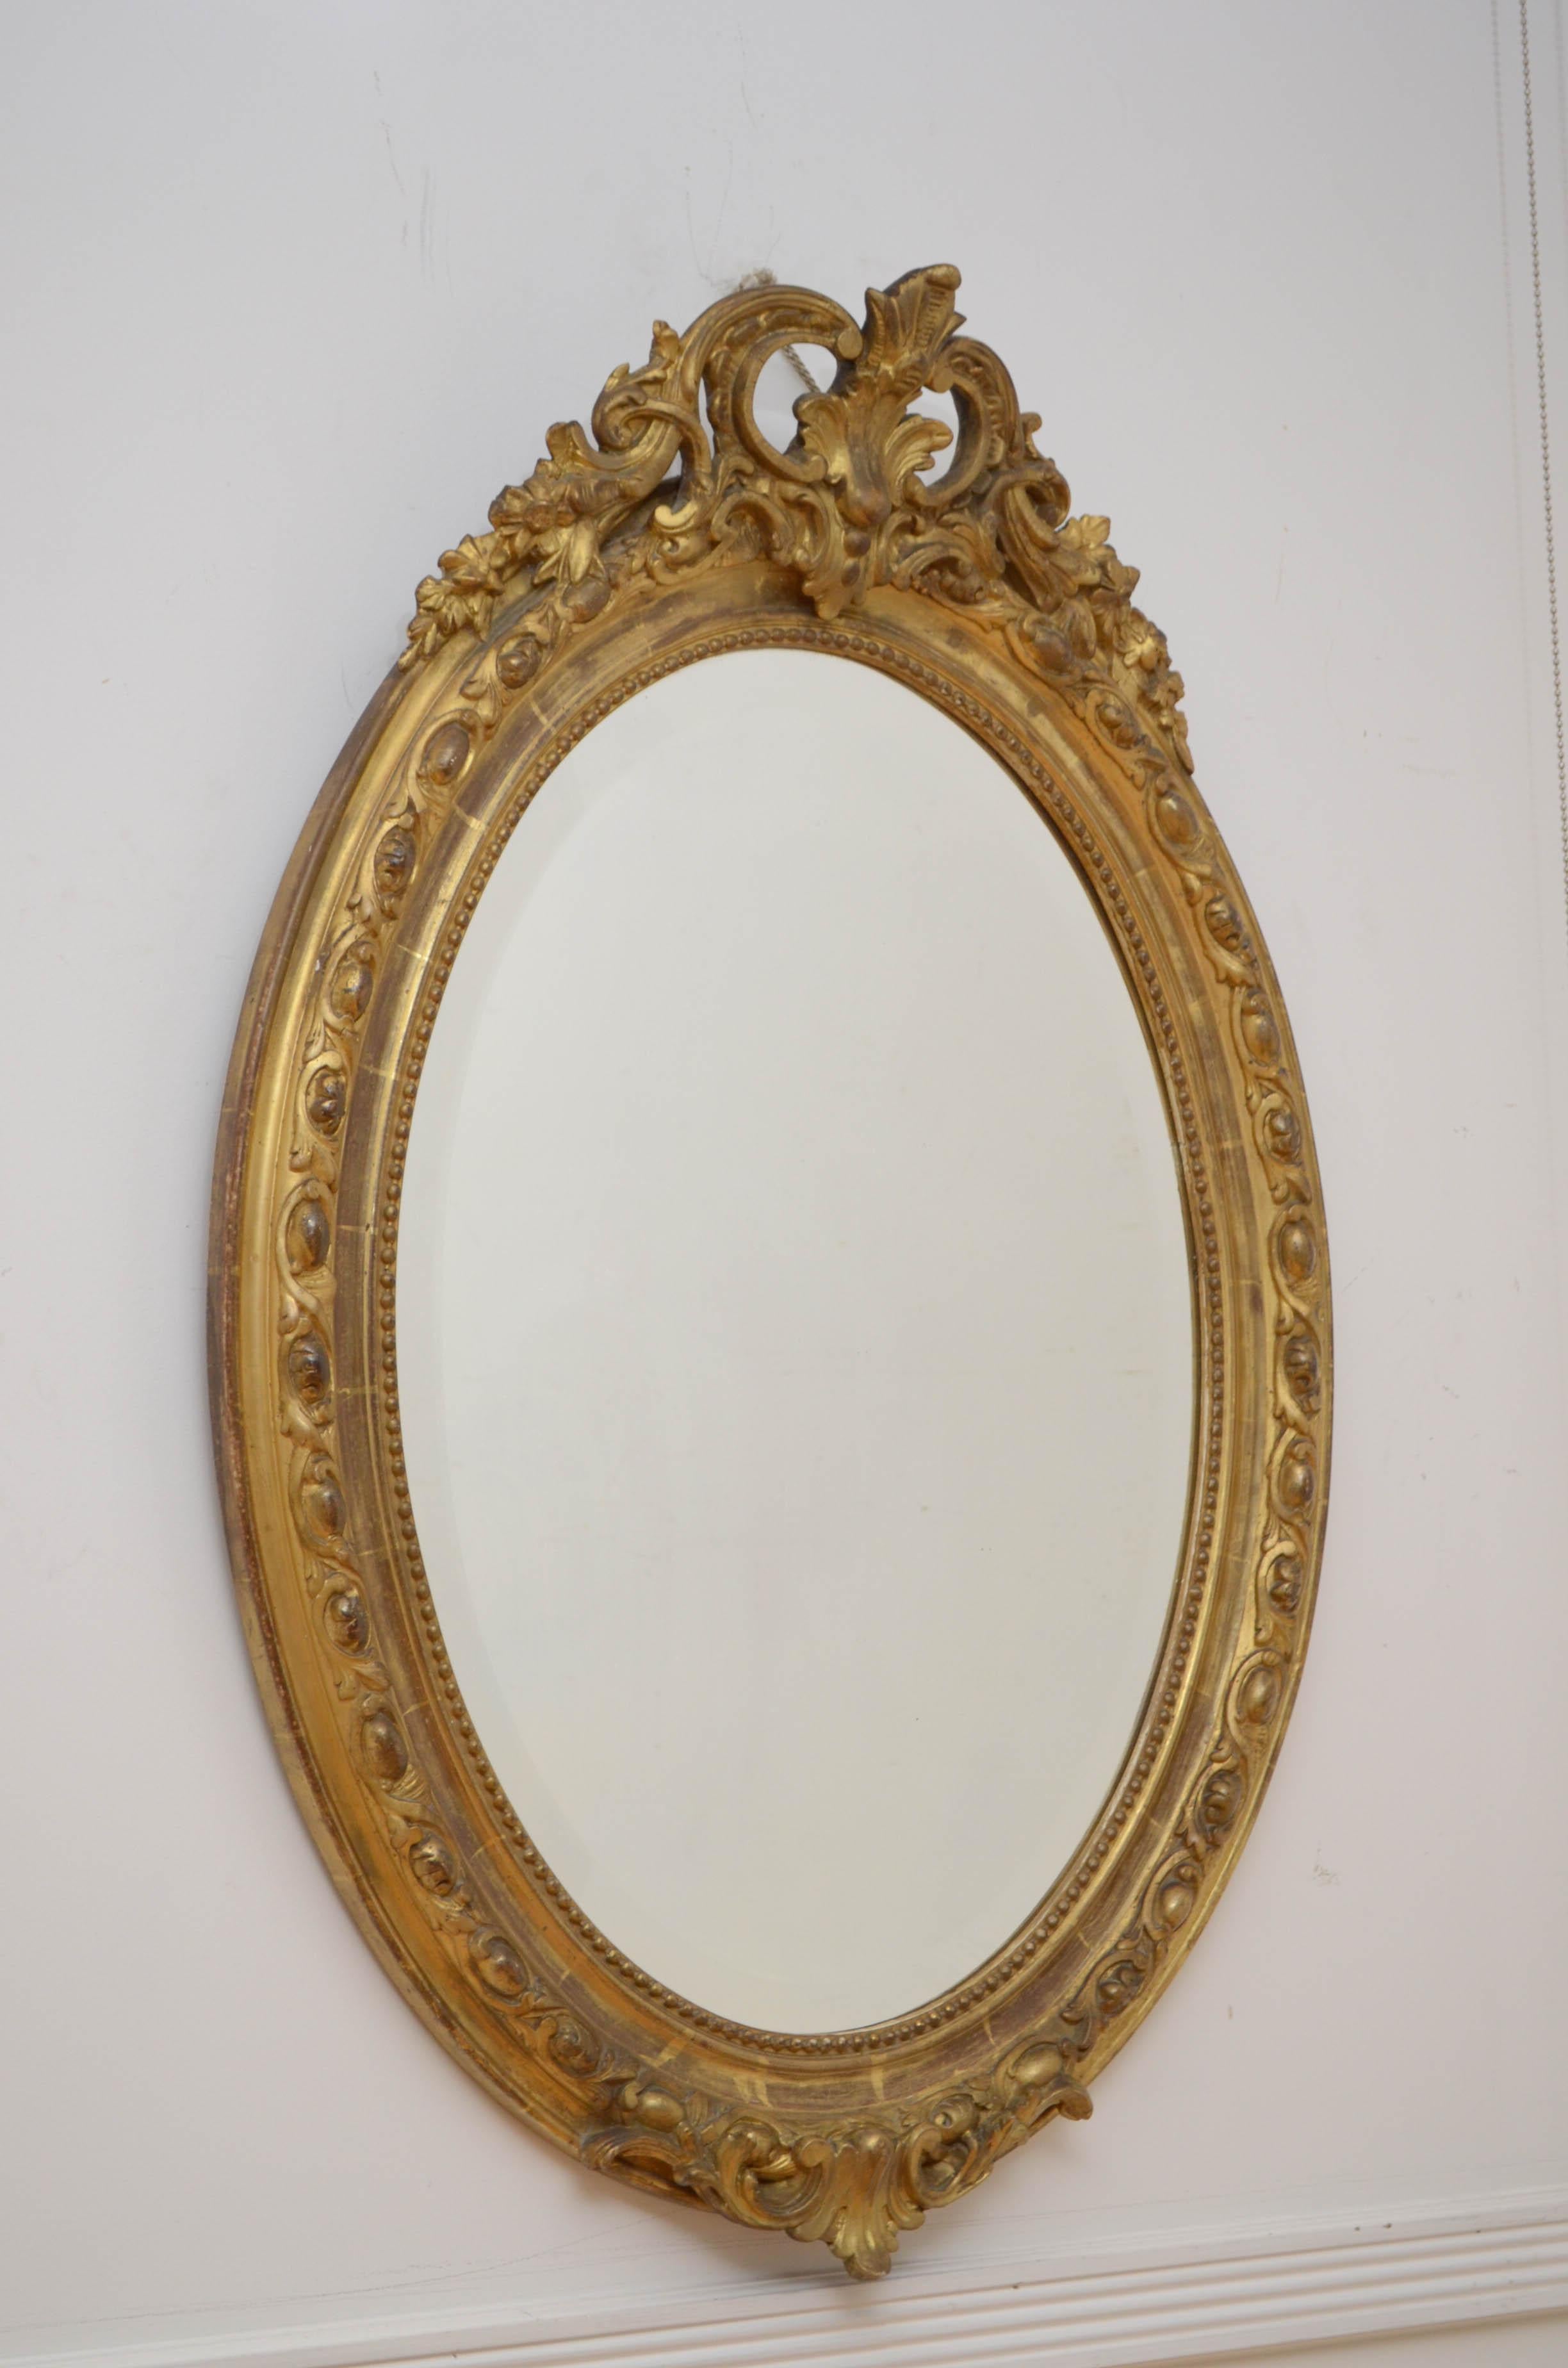 Feiner handgeschnitzter Spiegel aus dem 19. Jahrhundert im Rokoko-Stil, mit originalem, abgeschrägtem Glas mit einigen Sprenkeln in einem fein geschnitzten Rahmen. Der Rahmen ist mit 